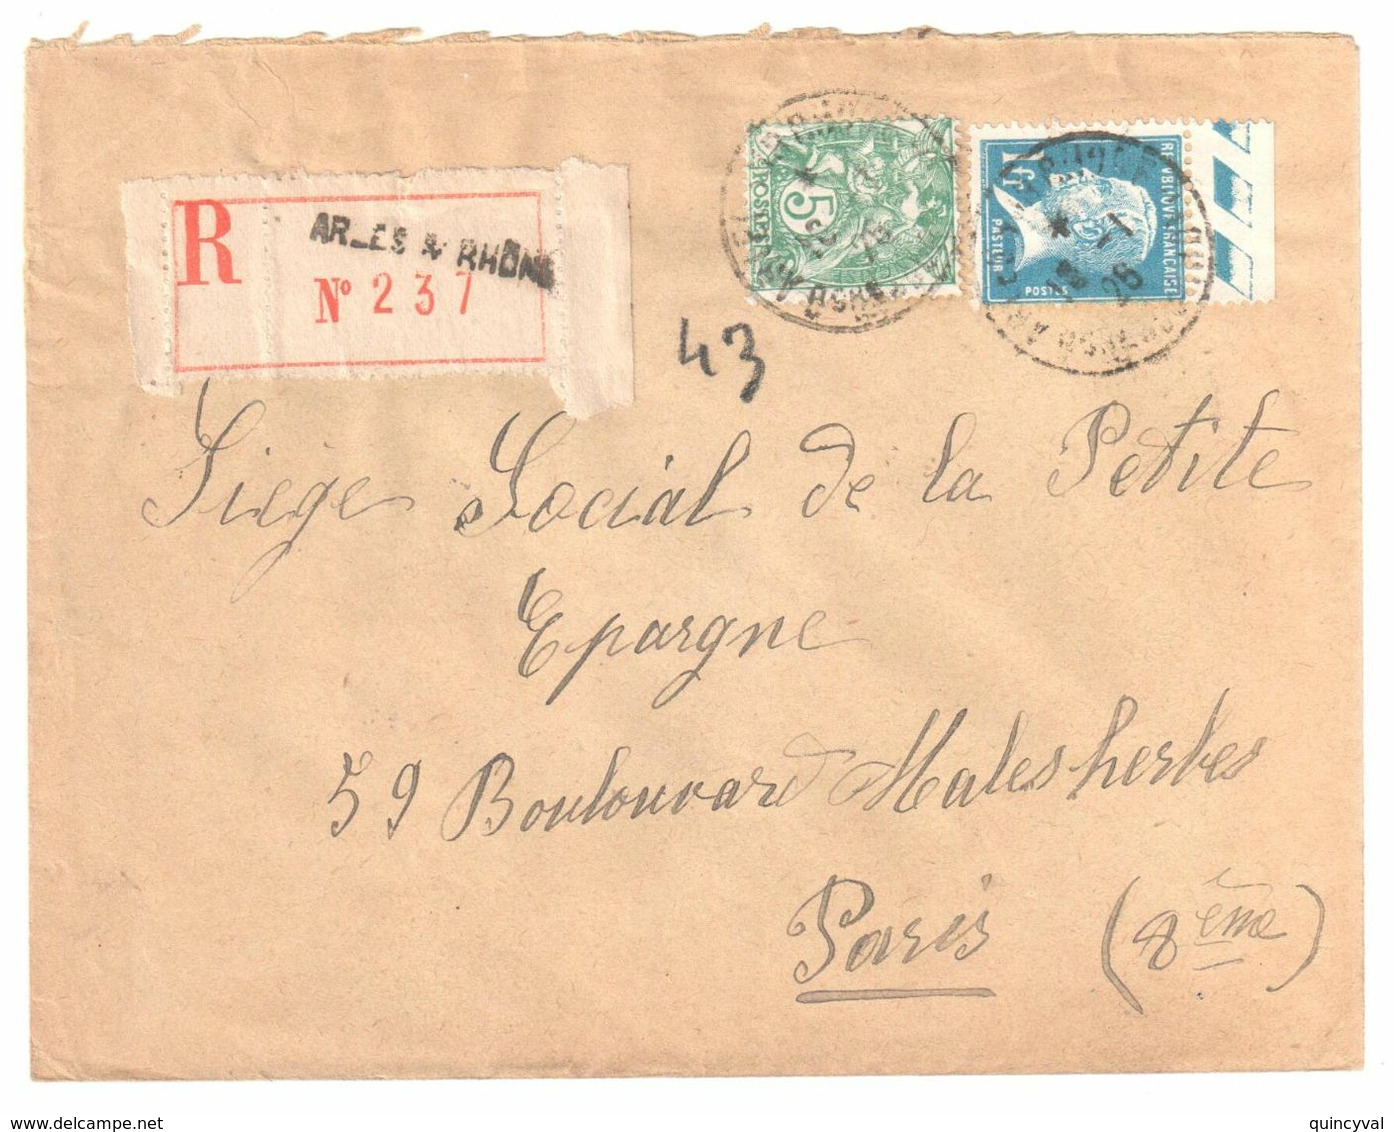 ARLES S RHONE Lettre Recommandée 1 F Pasteur Bord De Feuille 5c Blanc Yv 111 179 Ob 18 1 1926 - Lettres & Documents